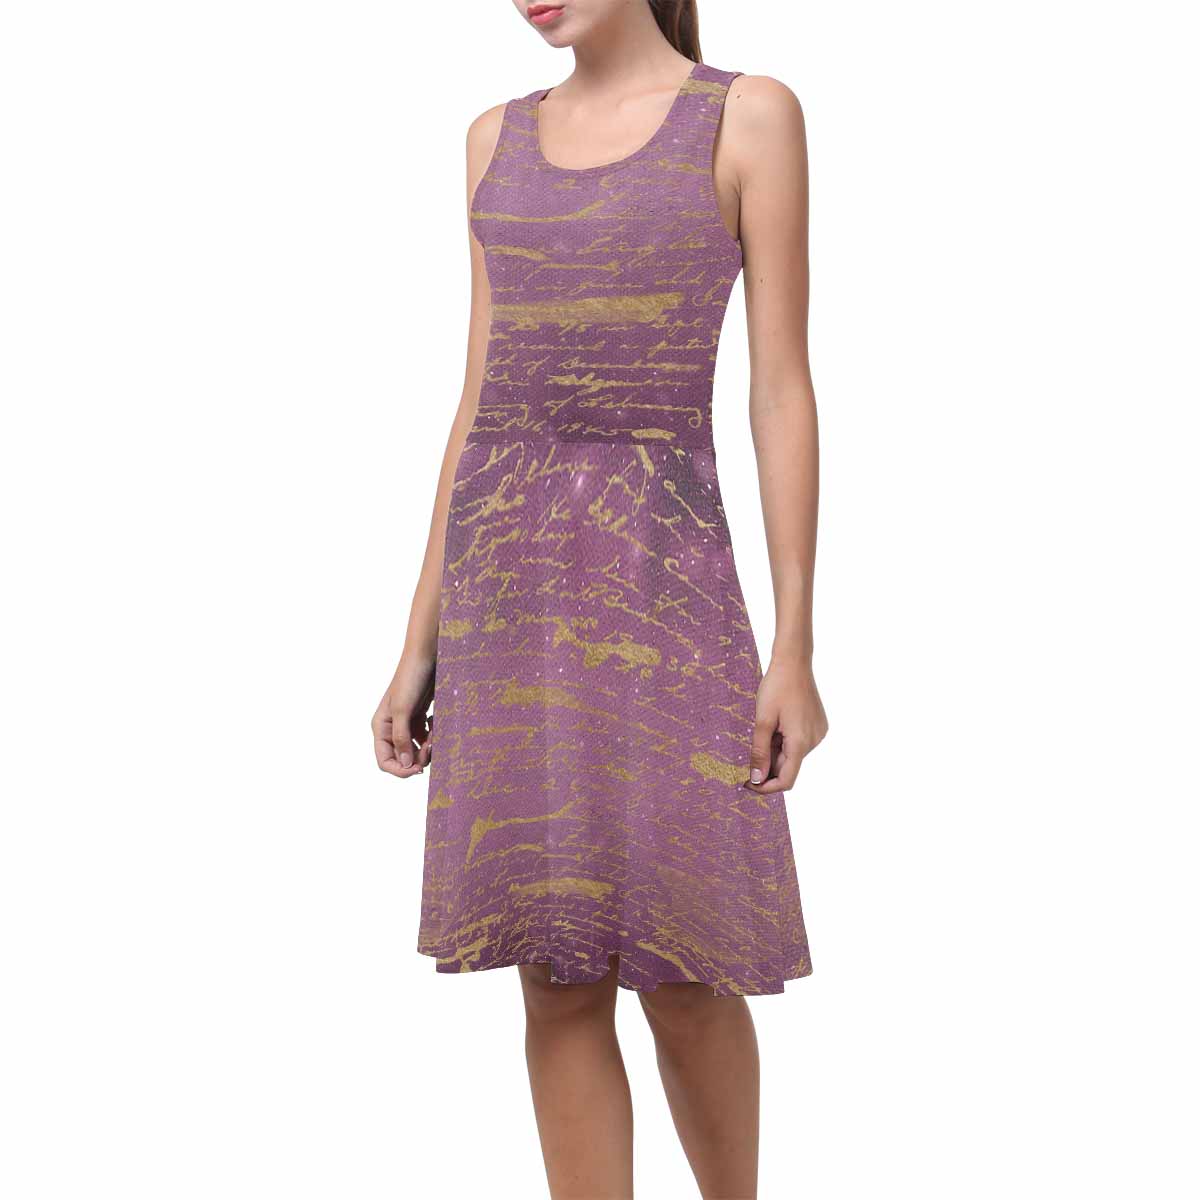 Antique General summer dress, MODEL 09534, design 51